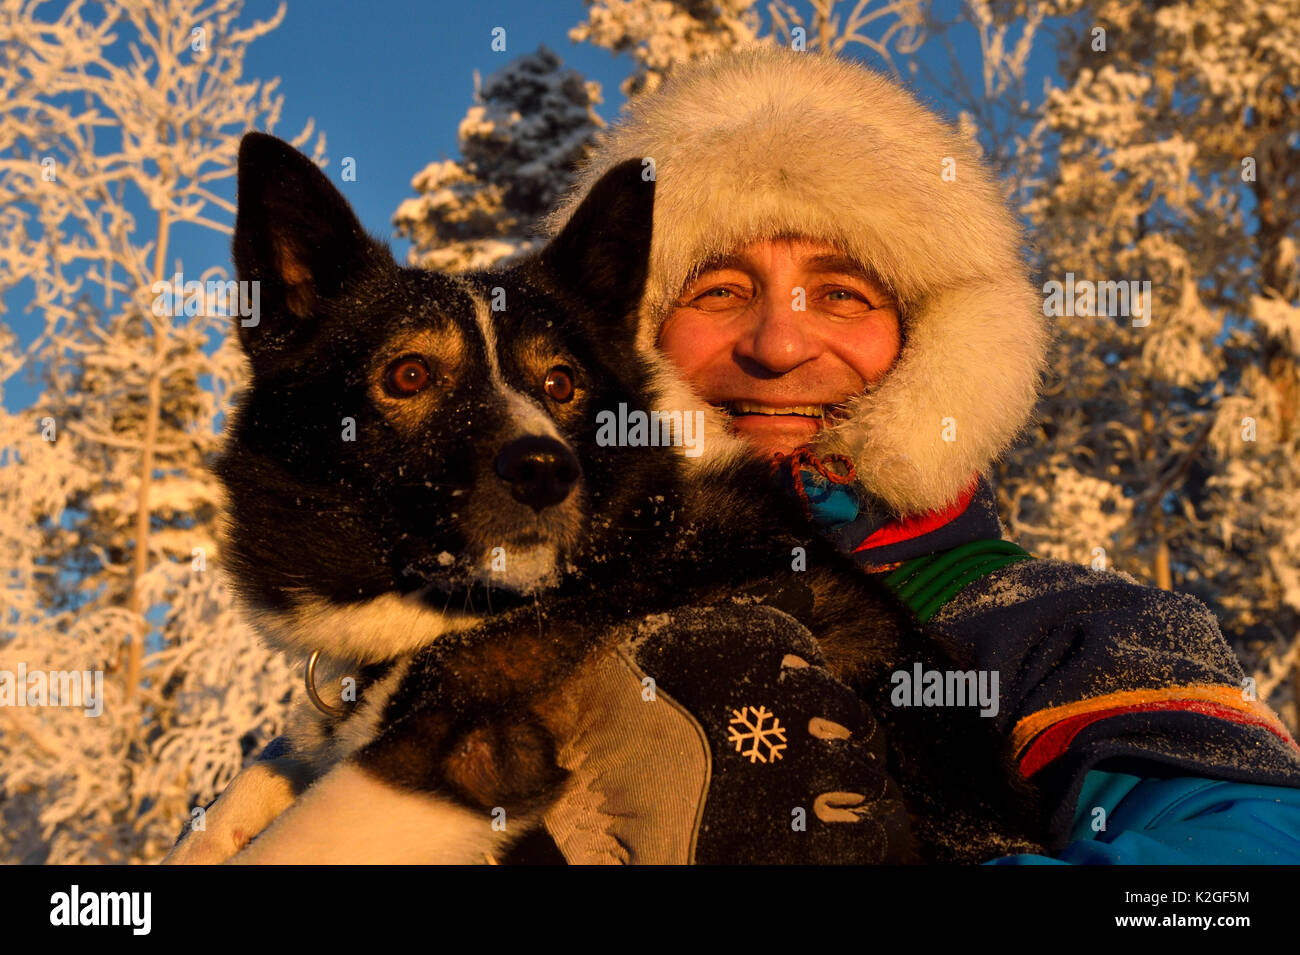 Nils-Torbjorn Nutti, propriétaire et exploitant au Nutti Siida Sami, avec des chiens husky, au cours de voyage de motoneige dans le désert, Jukkasjarvi, Laponie, Laponia, comté de Norrbotten, modèle de la Suède en liberté. Banque D'Images